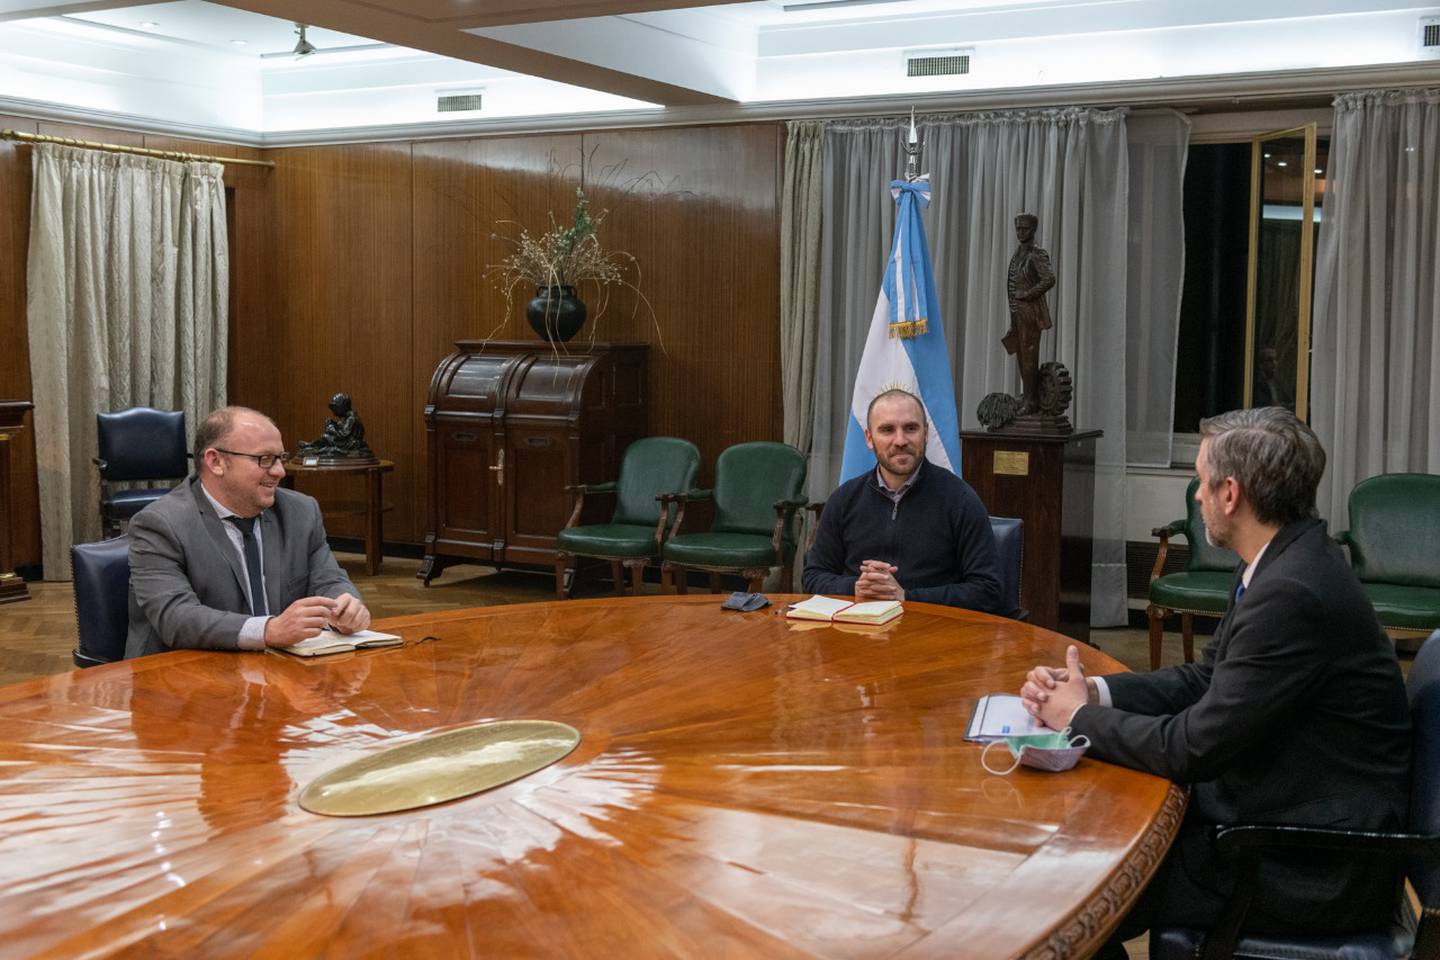 Guzmán despidió a Sardi de la secretaría de Finanzas y le dio la bienvenida a Brigo, que ya integraba el ministerio económicodfd